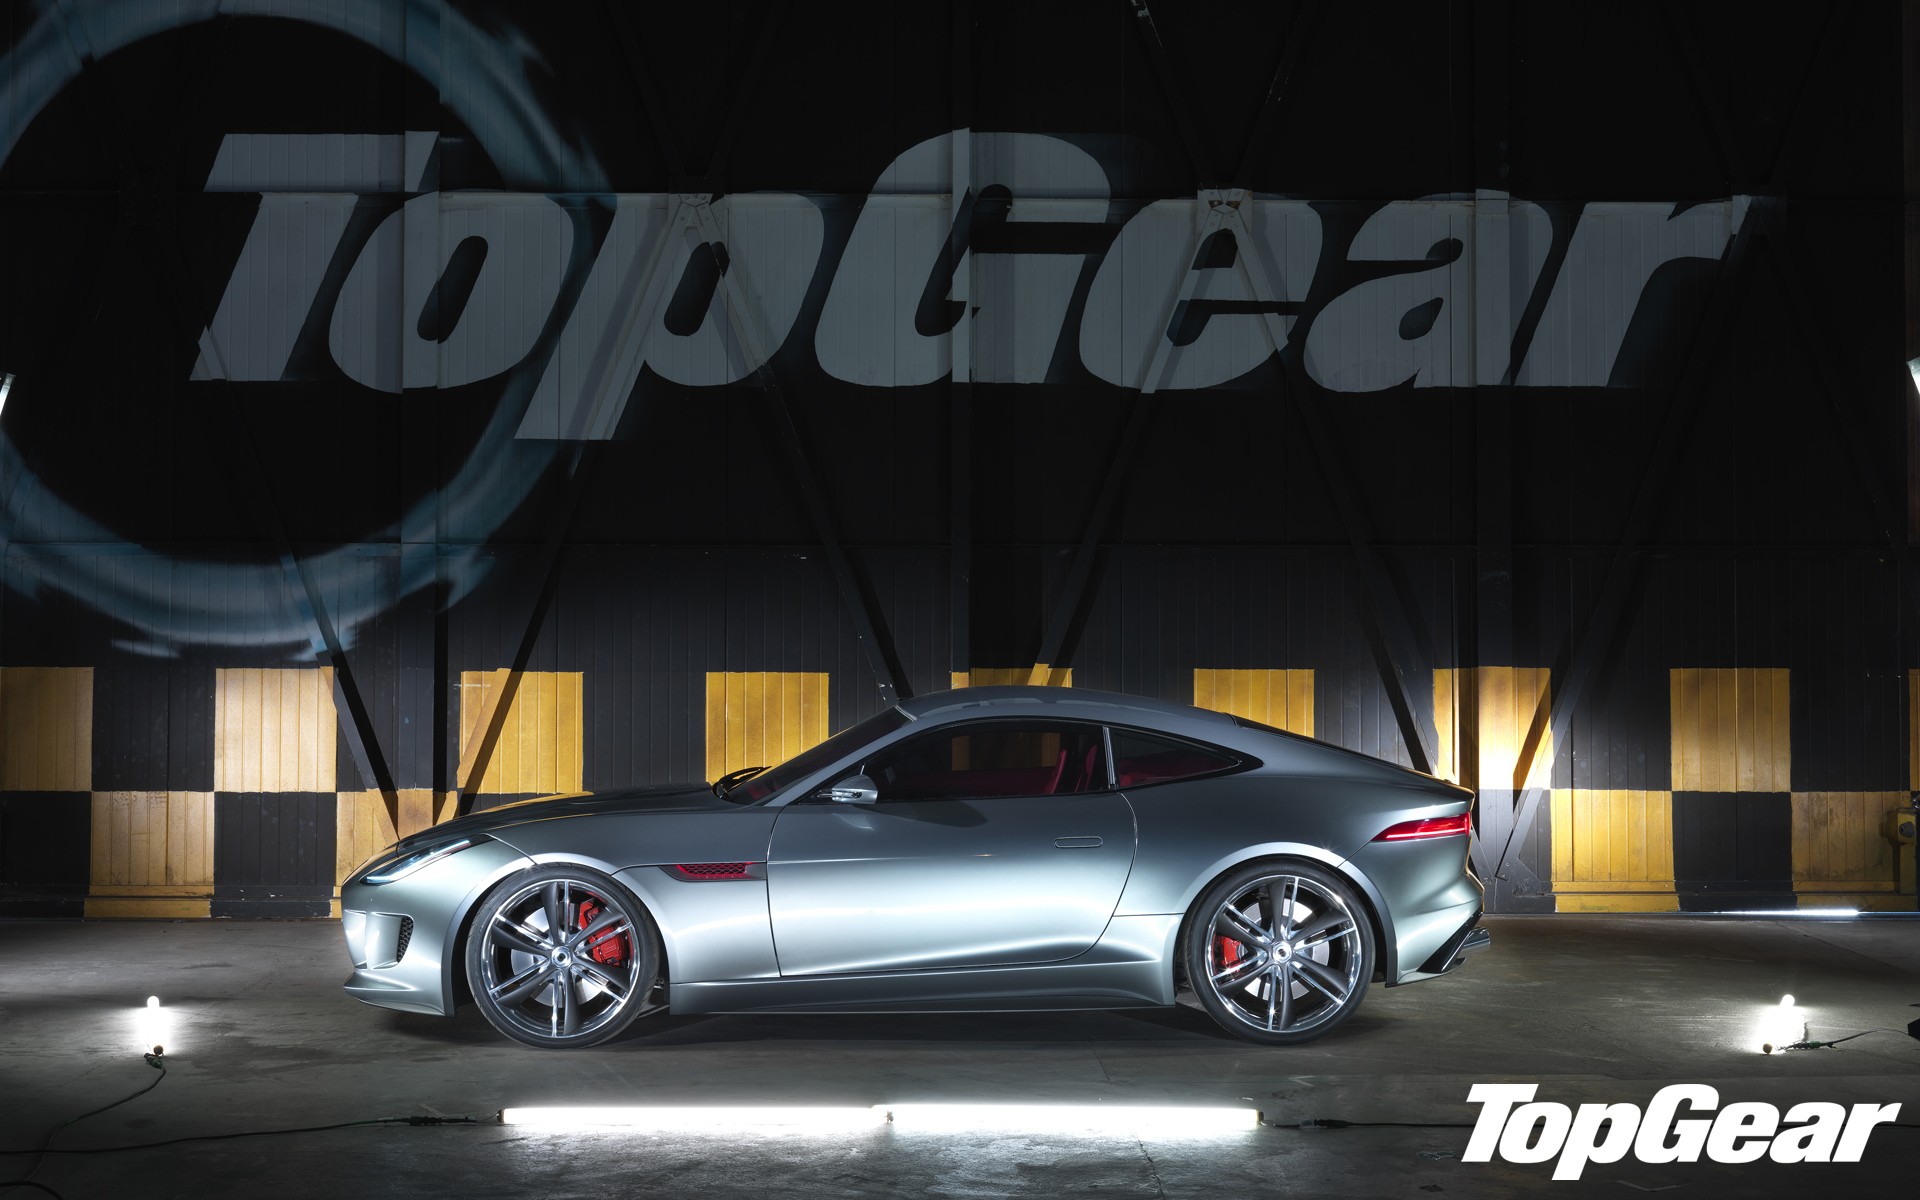 Top Gear Wallpaper Jaguar Super Cars